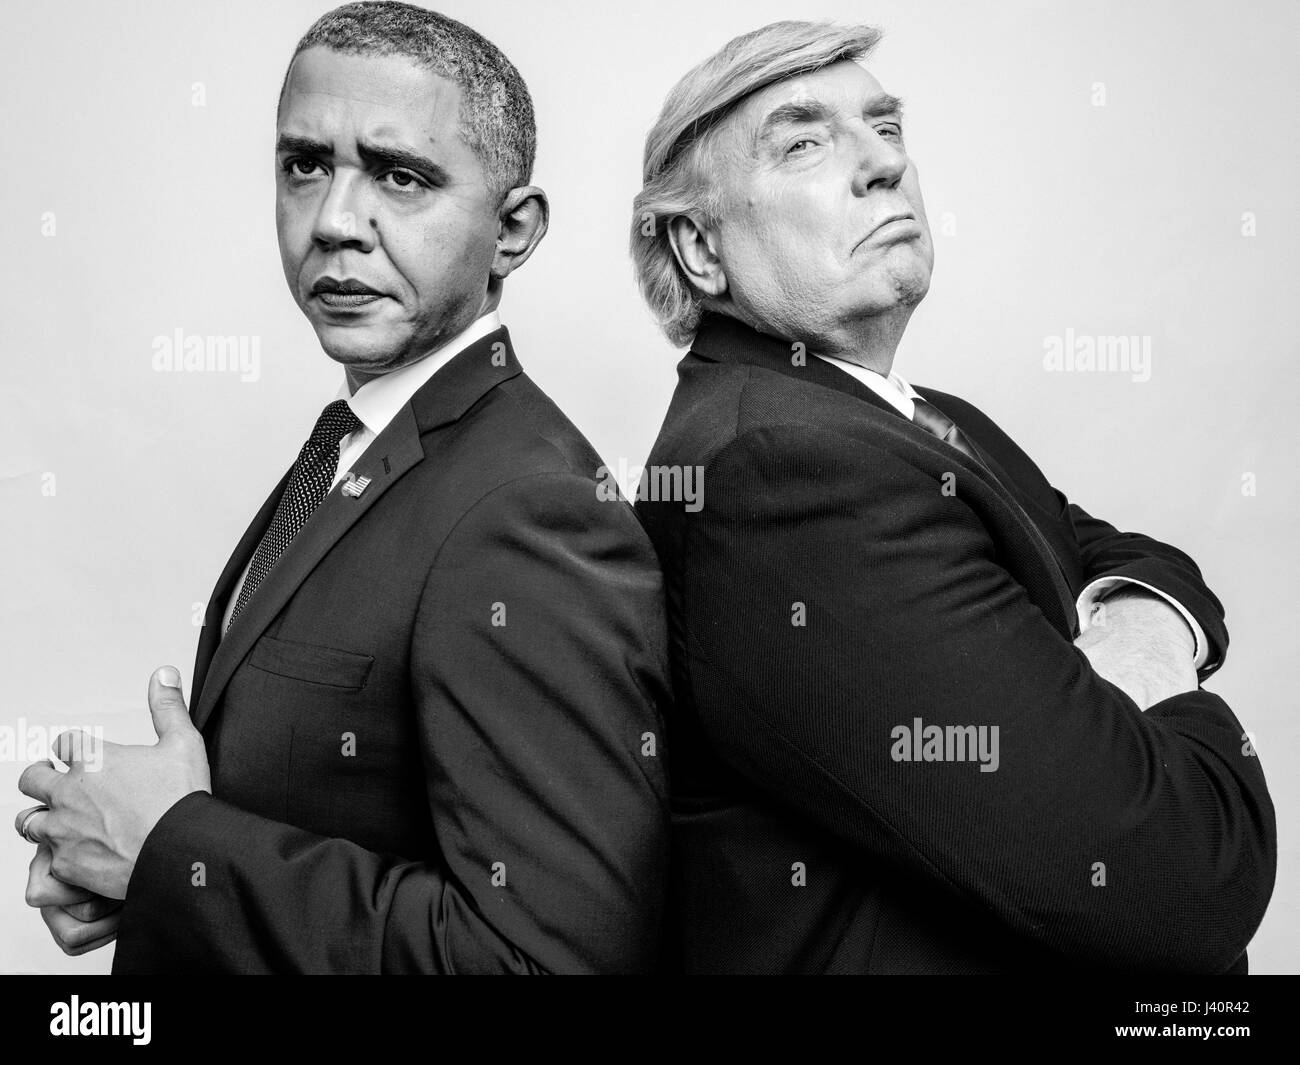 Le président Donald Trump J et le président Obama assimilés rencontrez pour un shoot studio à Hong Kong. Banque D'Images